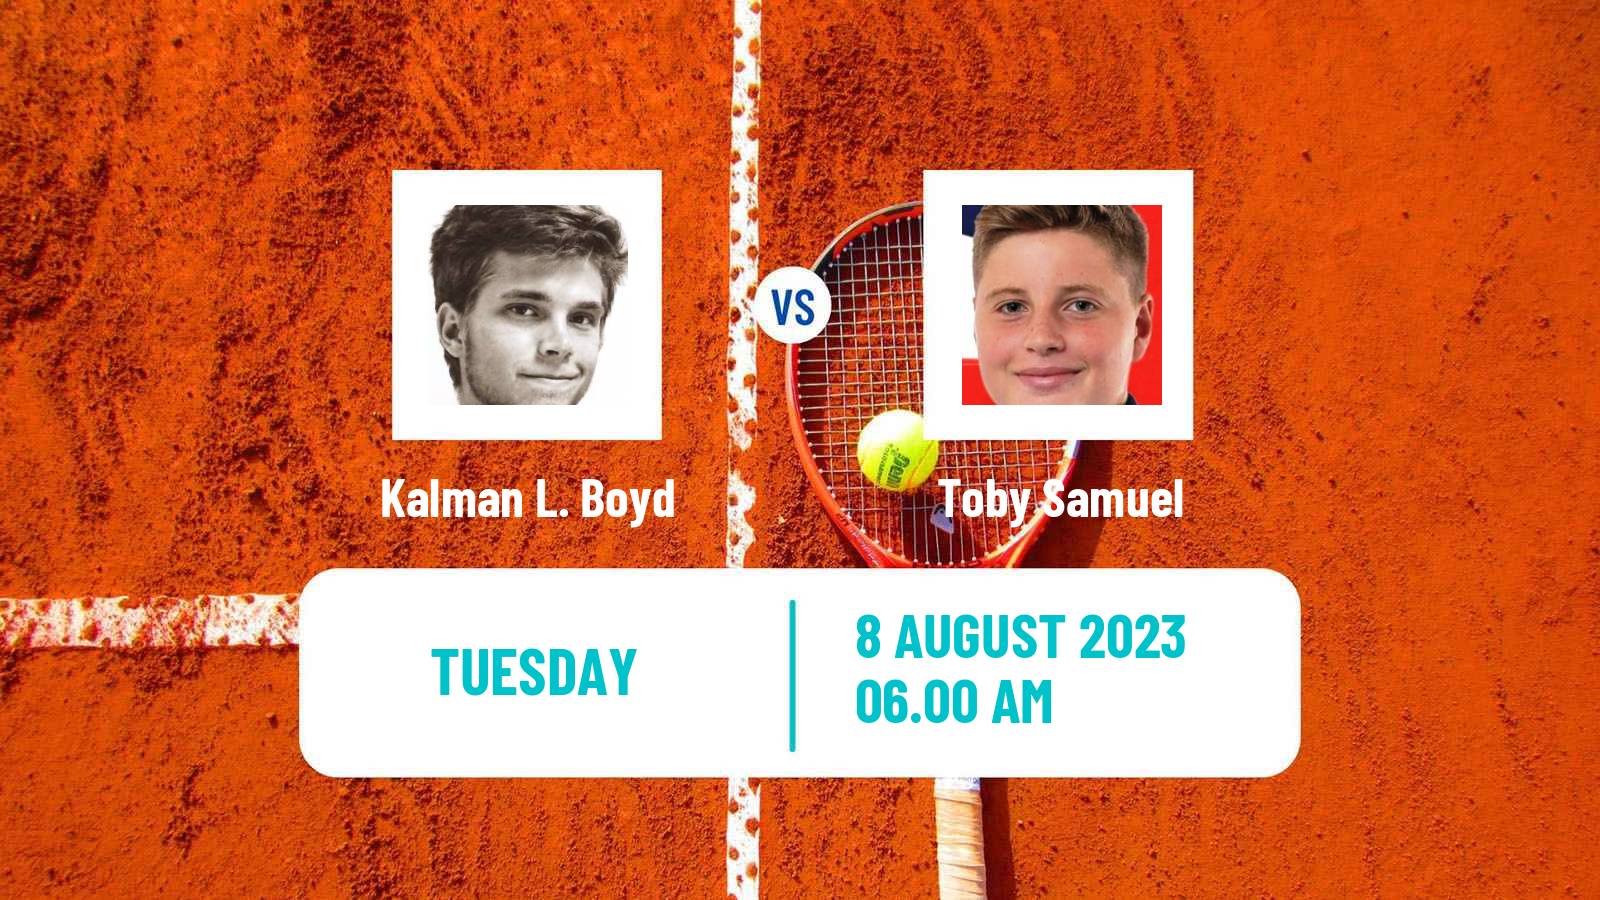 Tennis ITF M25 Roehampton 3 Men 2023 Kalman L. Boyd - Toby Samuel